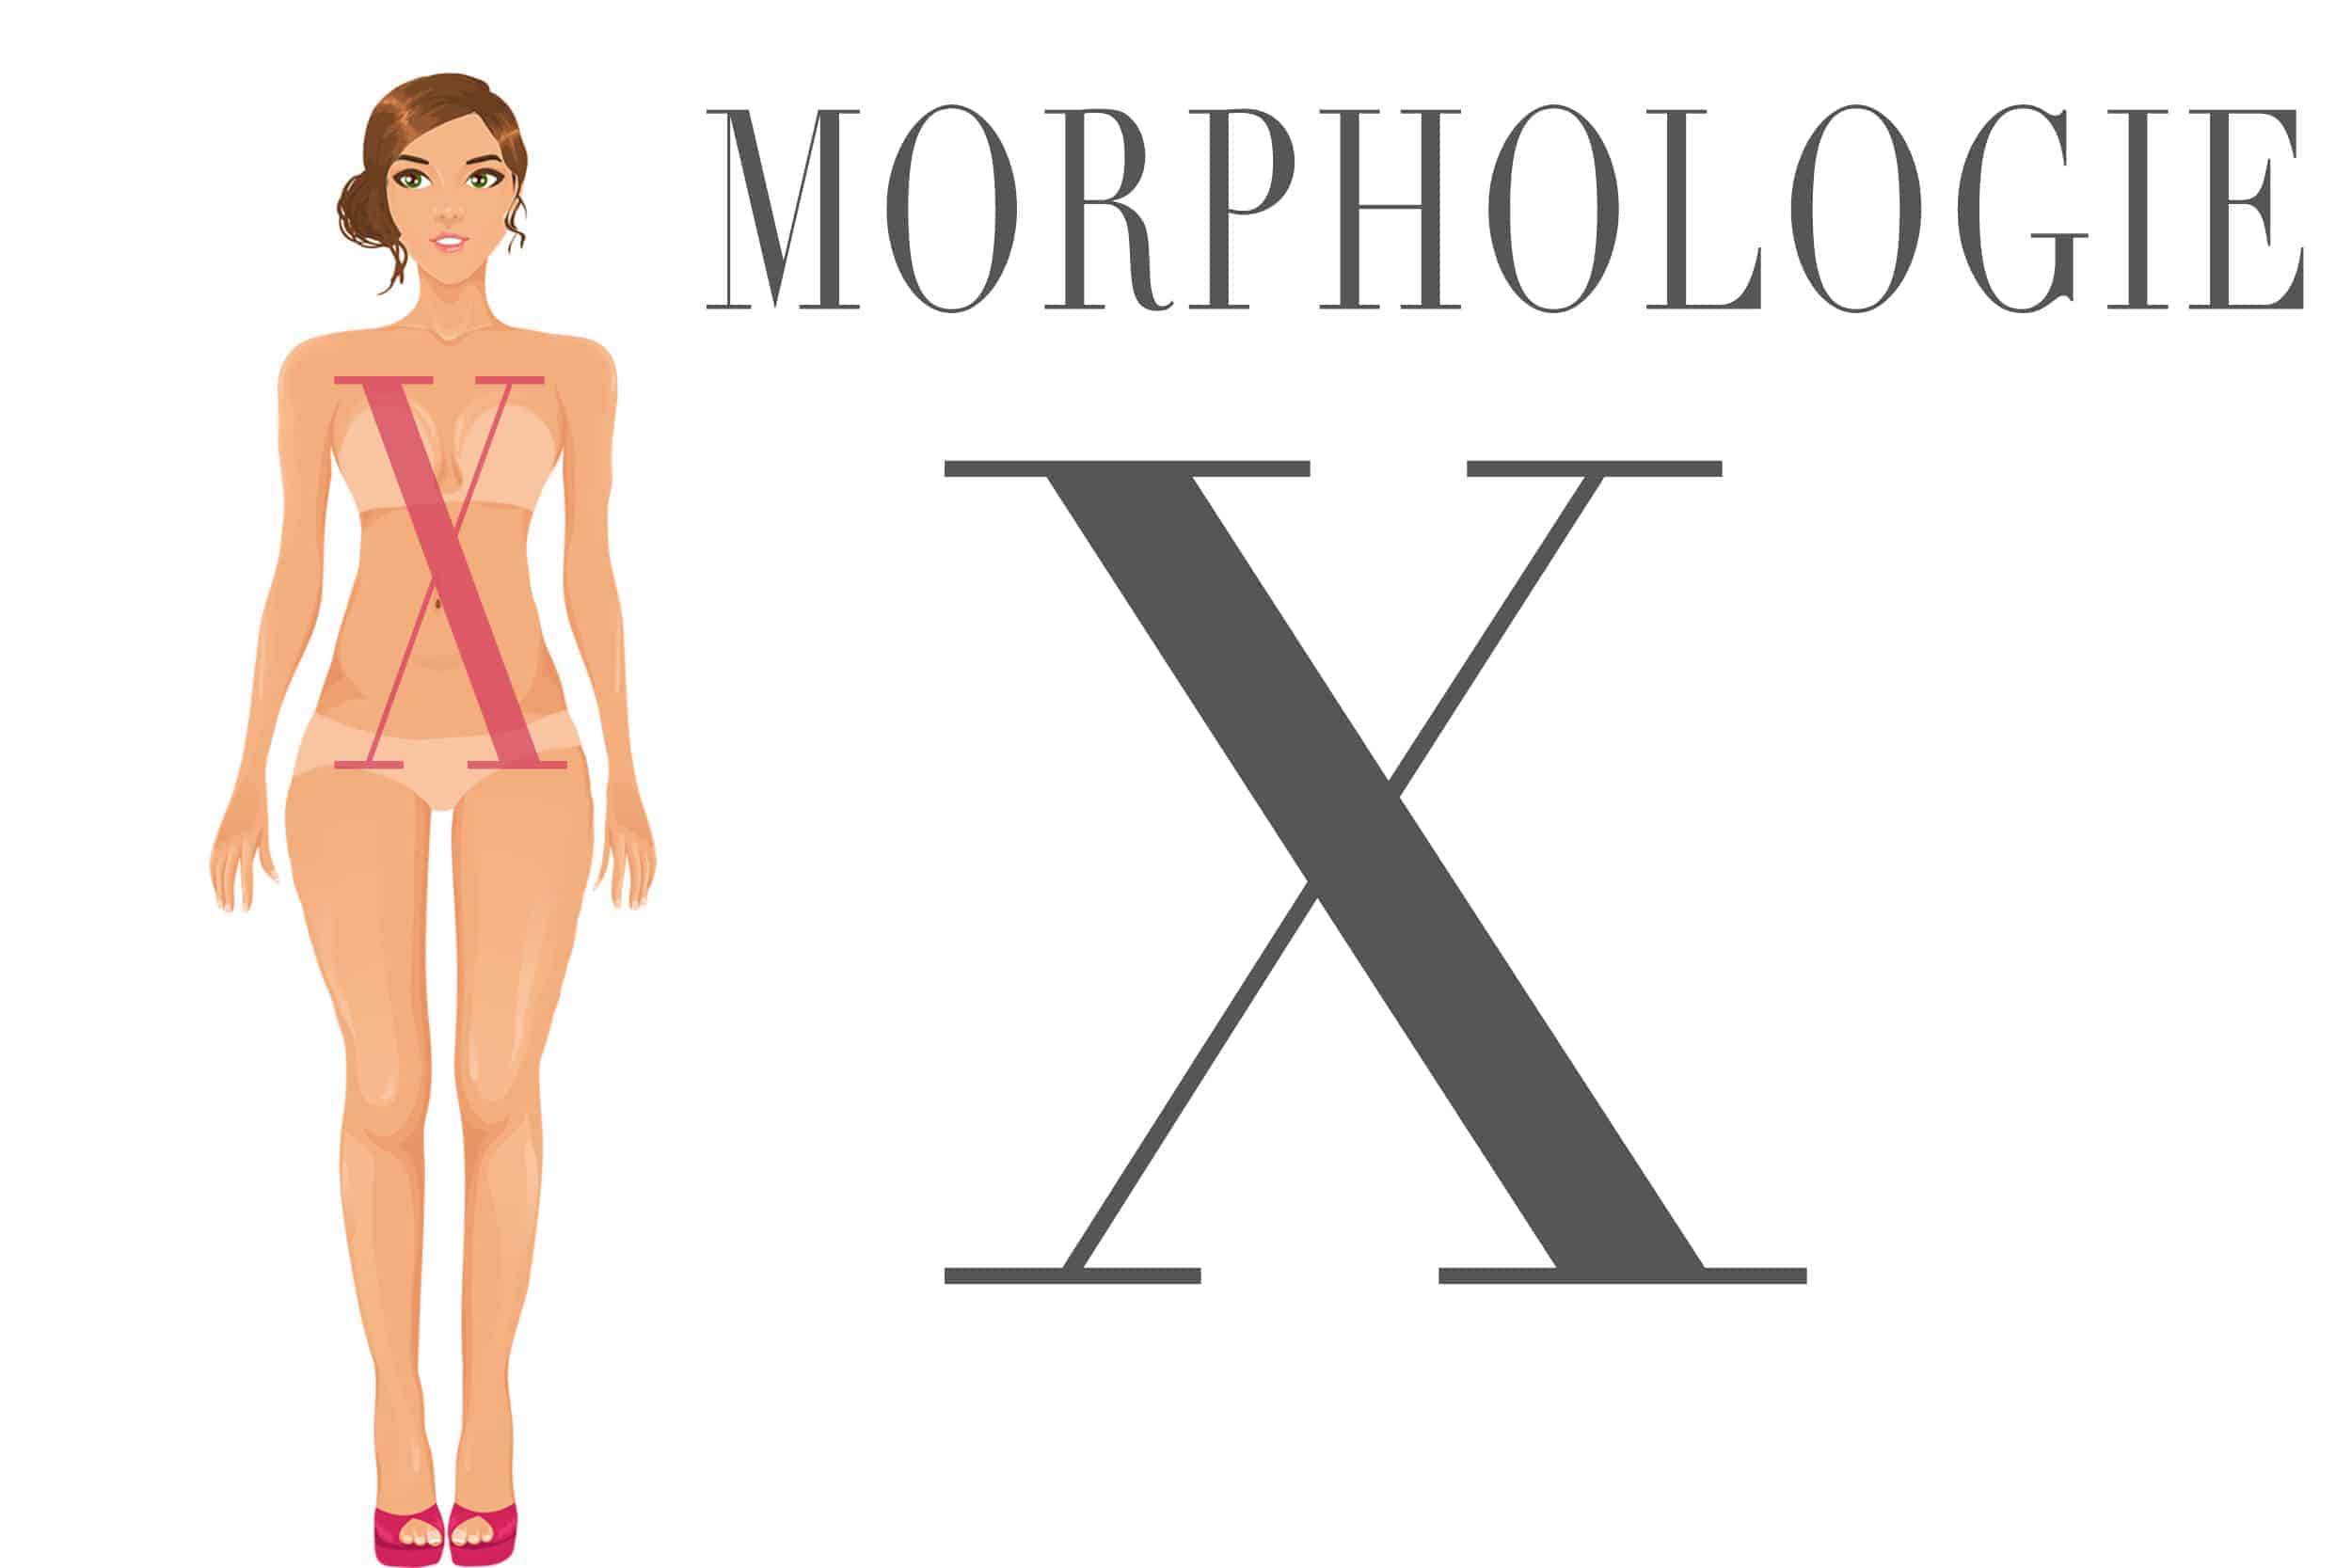 Morphologie en X ou sablier : votre liste de vêtements !